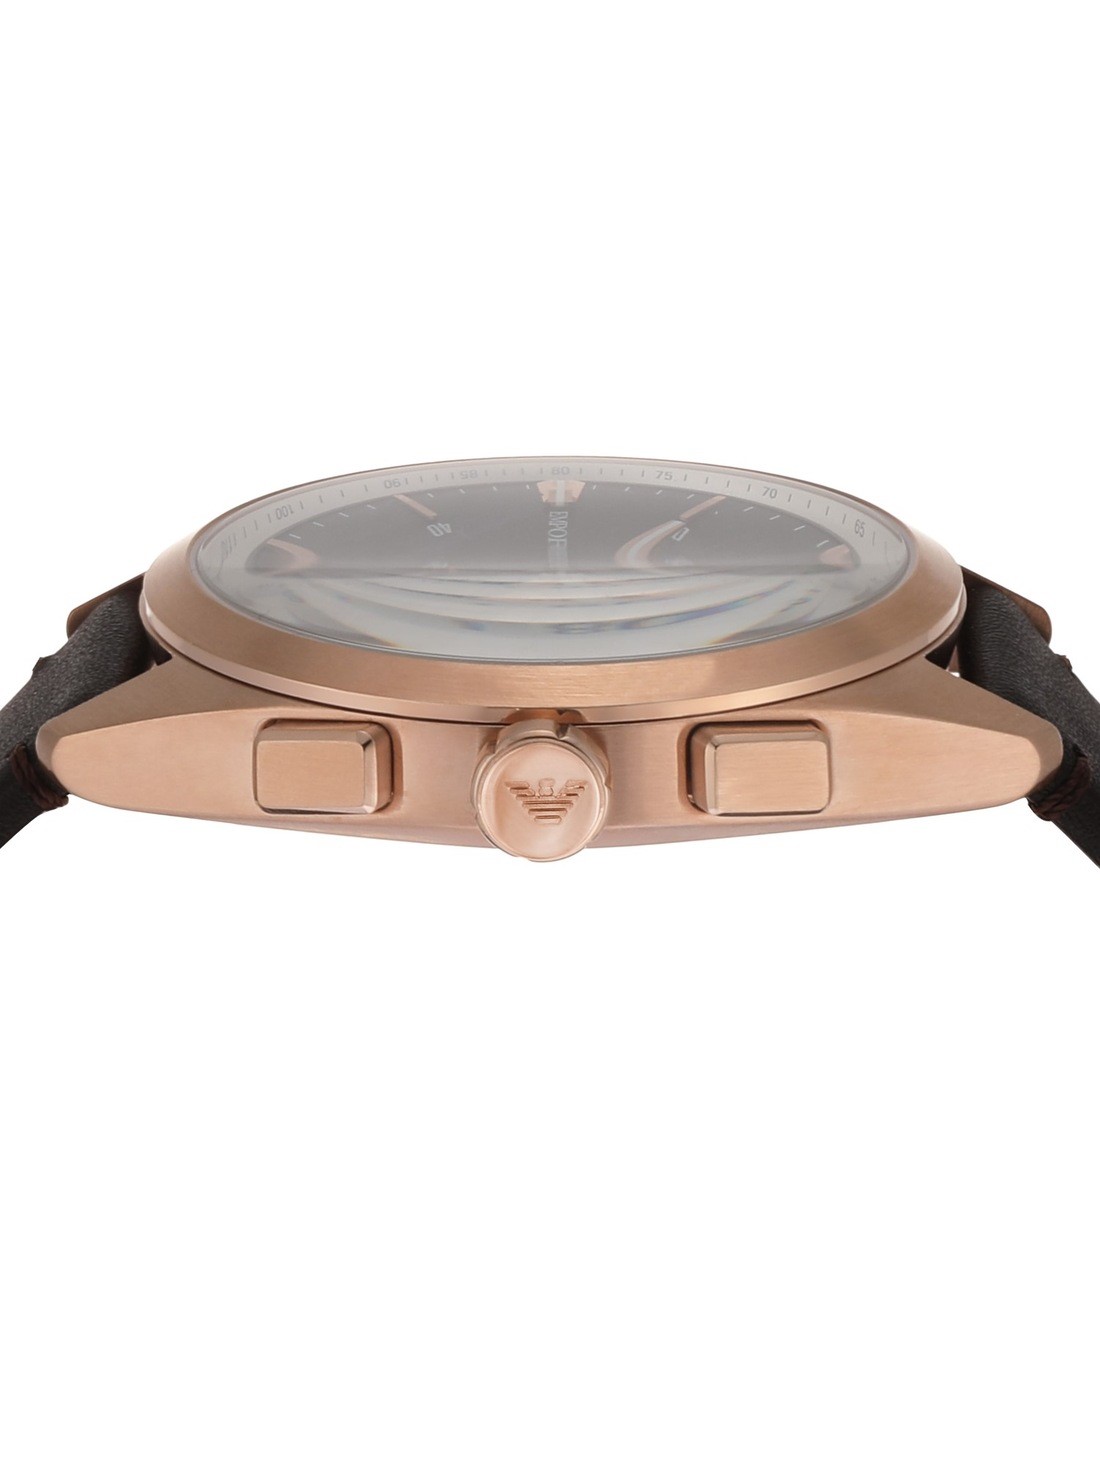 Armani AR11554 Watch Emporio Brown